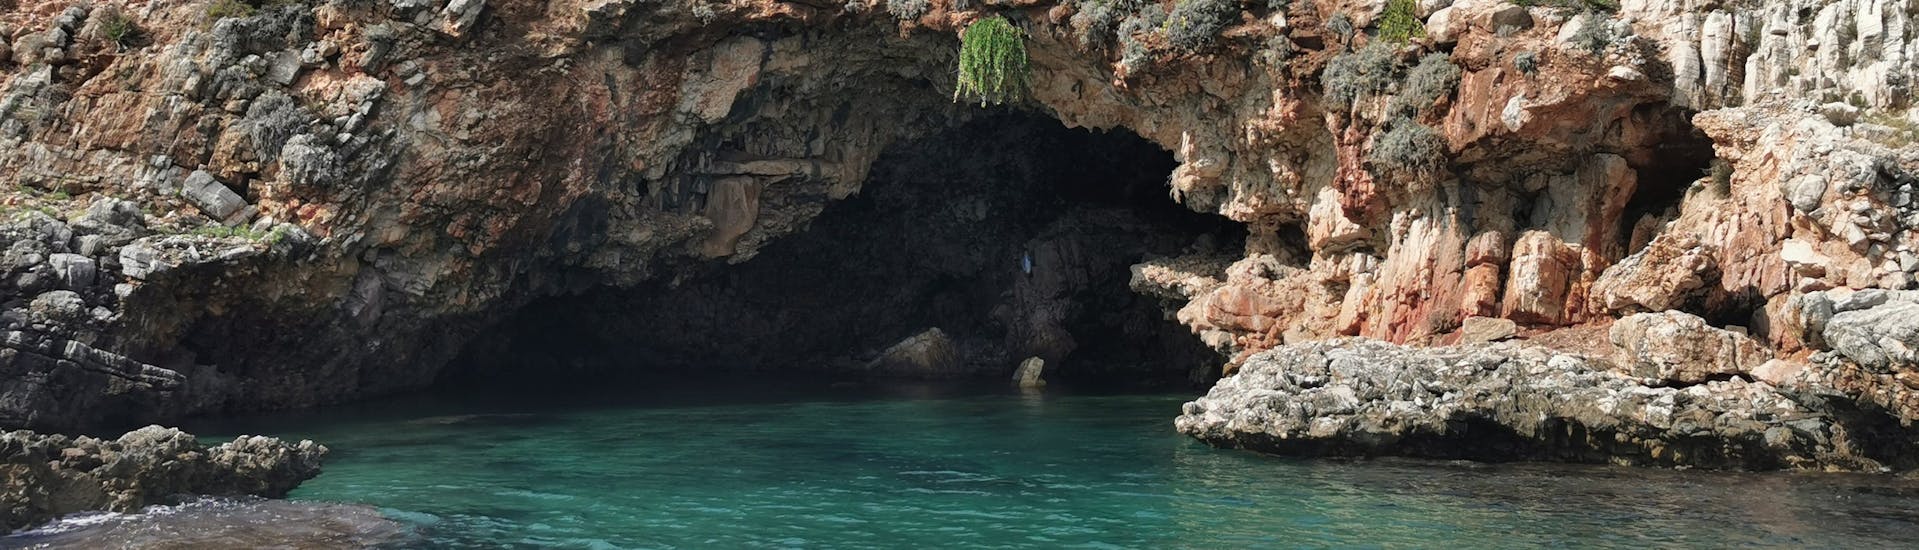 An der Küste von Riserva dello Zingaro gibt es viele schöne Grotten, die während der Bootstour von Castellamare nach Riserva dello Zingaro bewundert werden können.